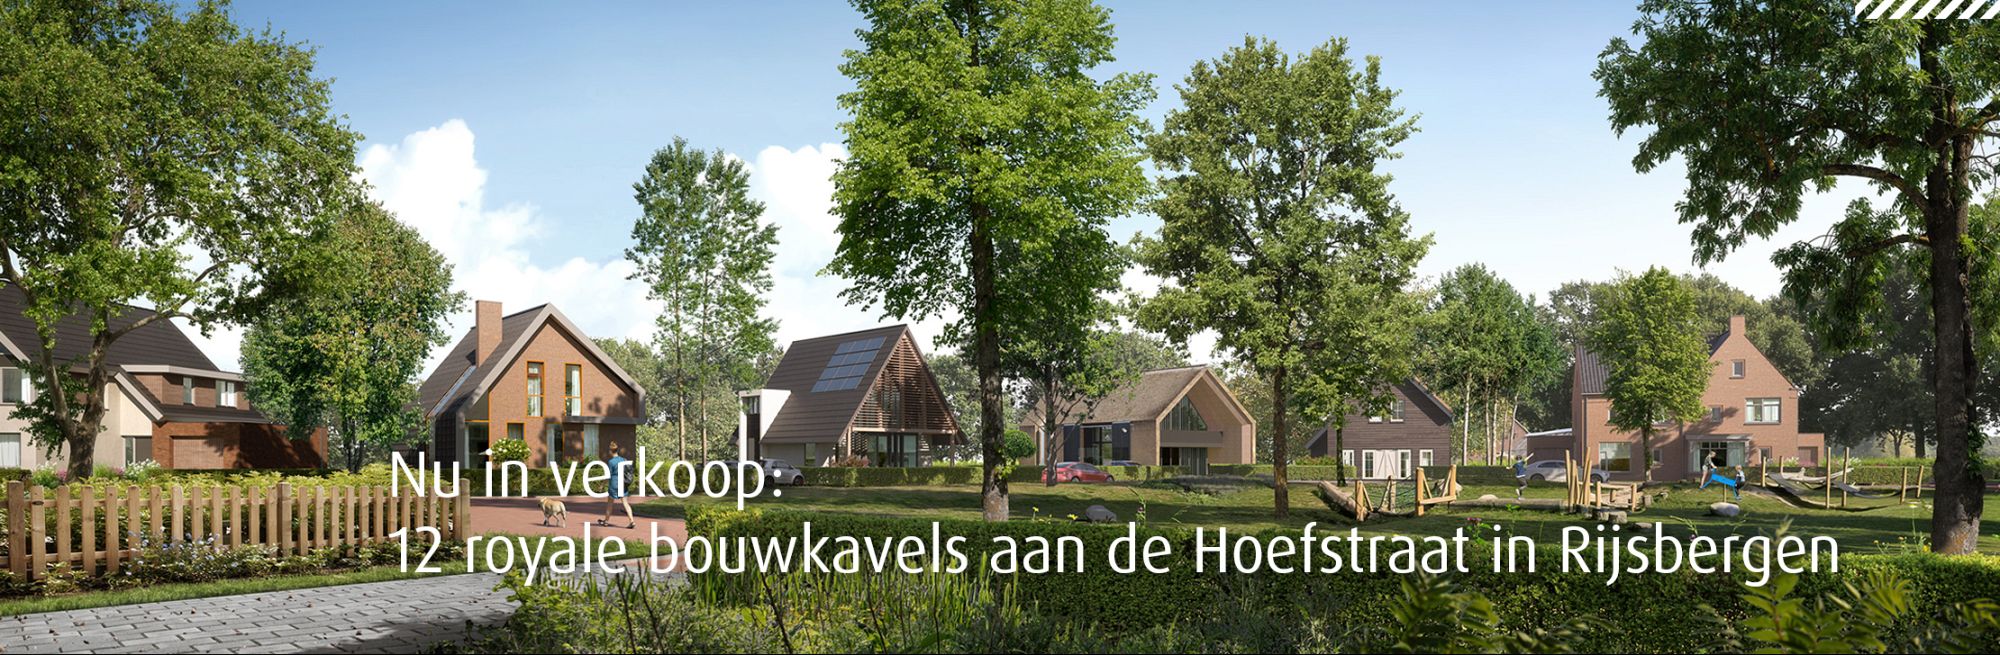 ruimte voor bouwkavels in Brabant